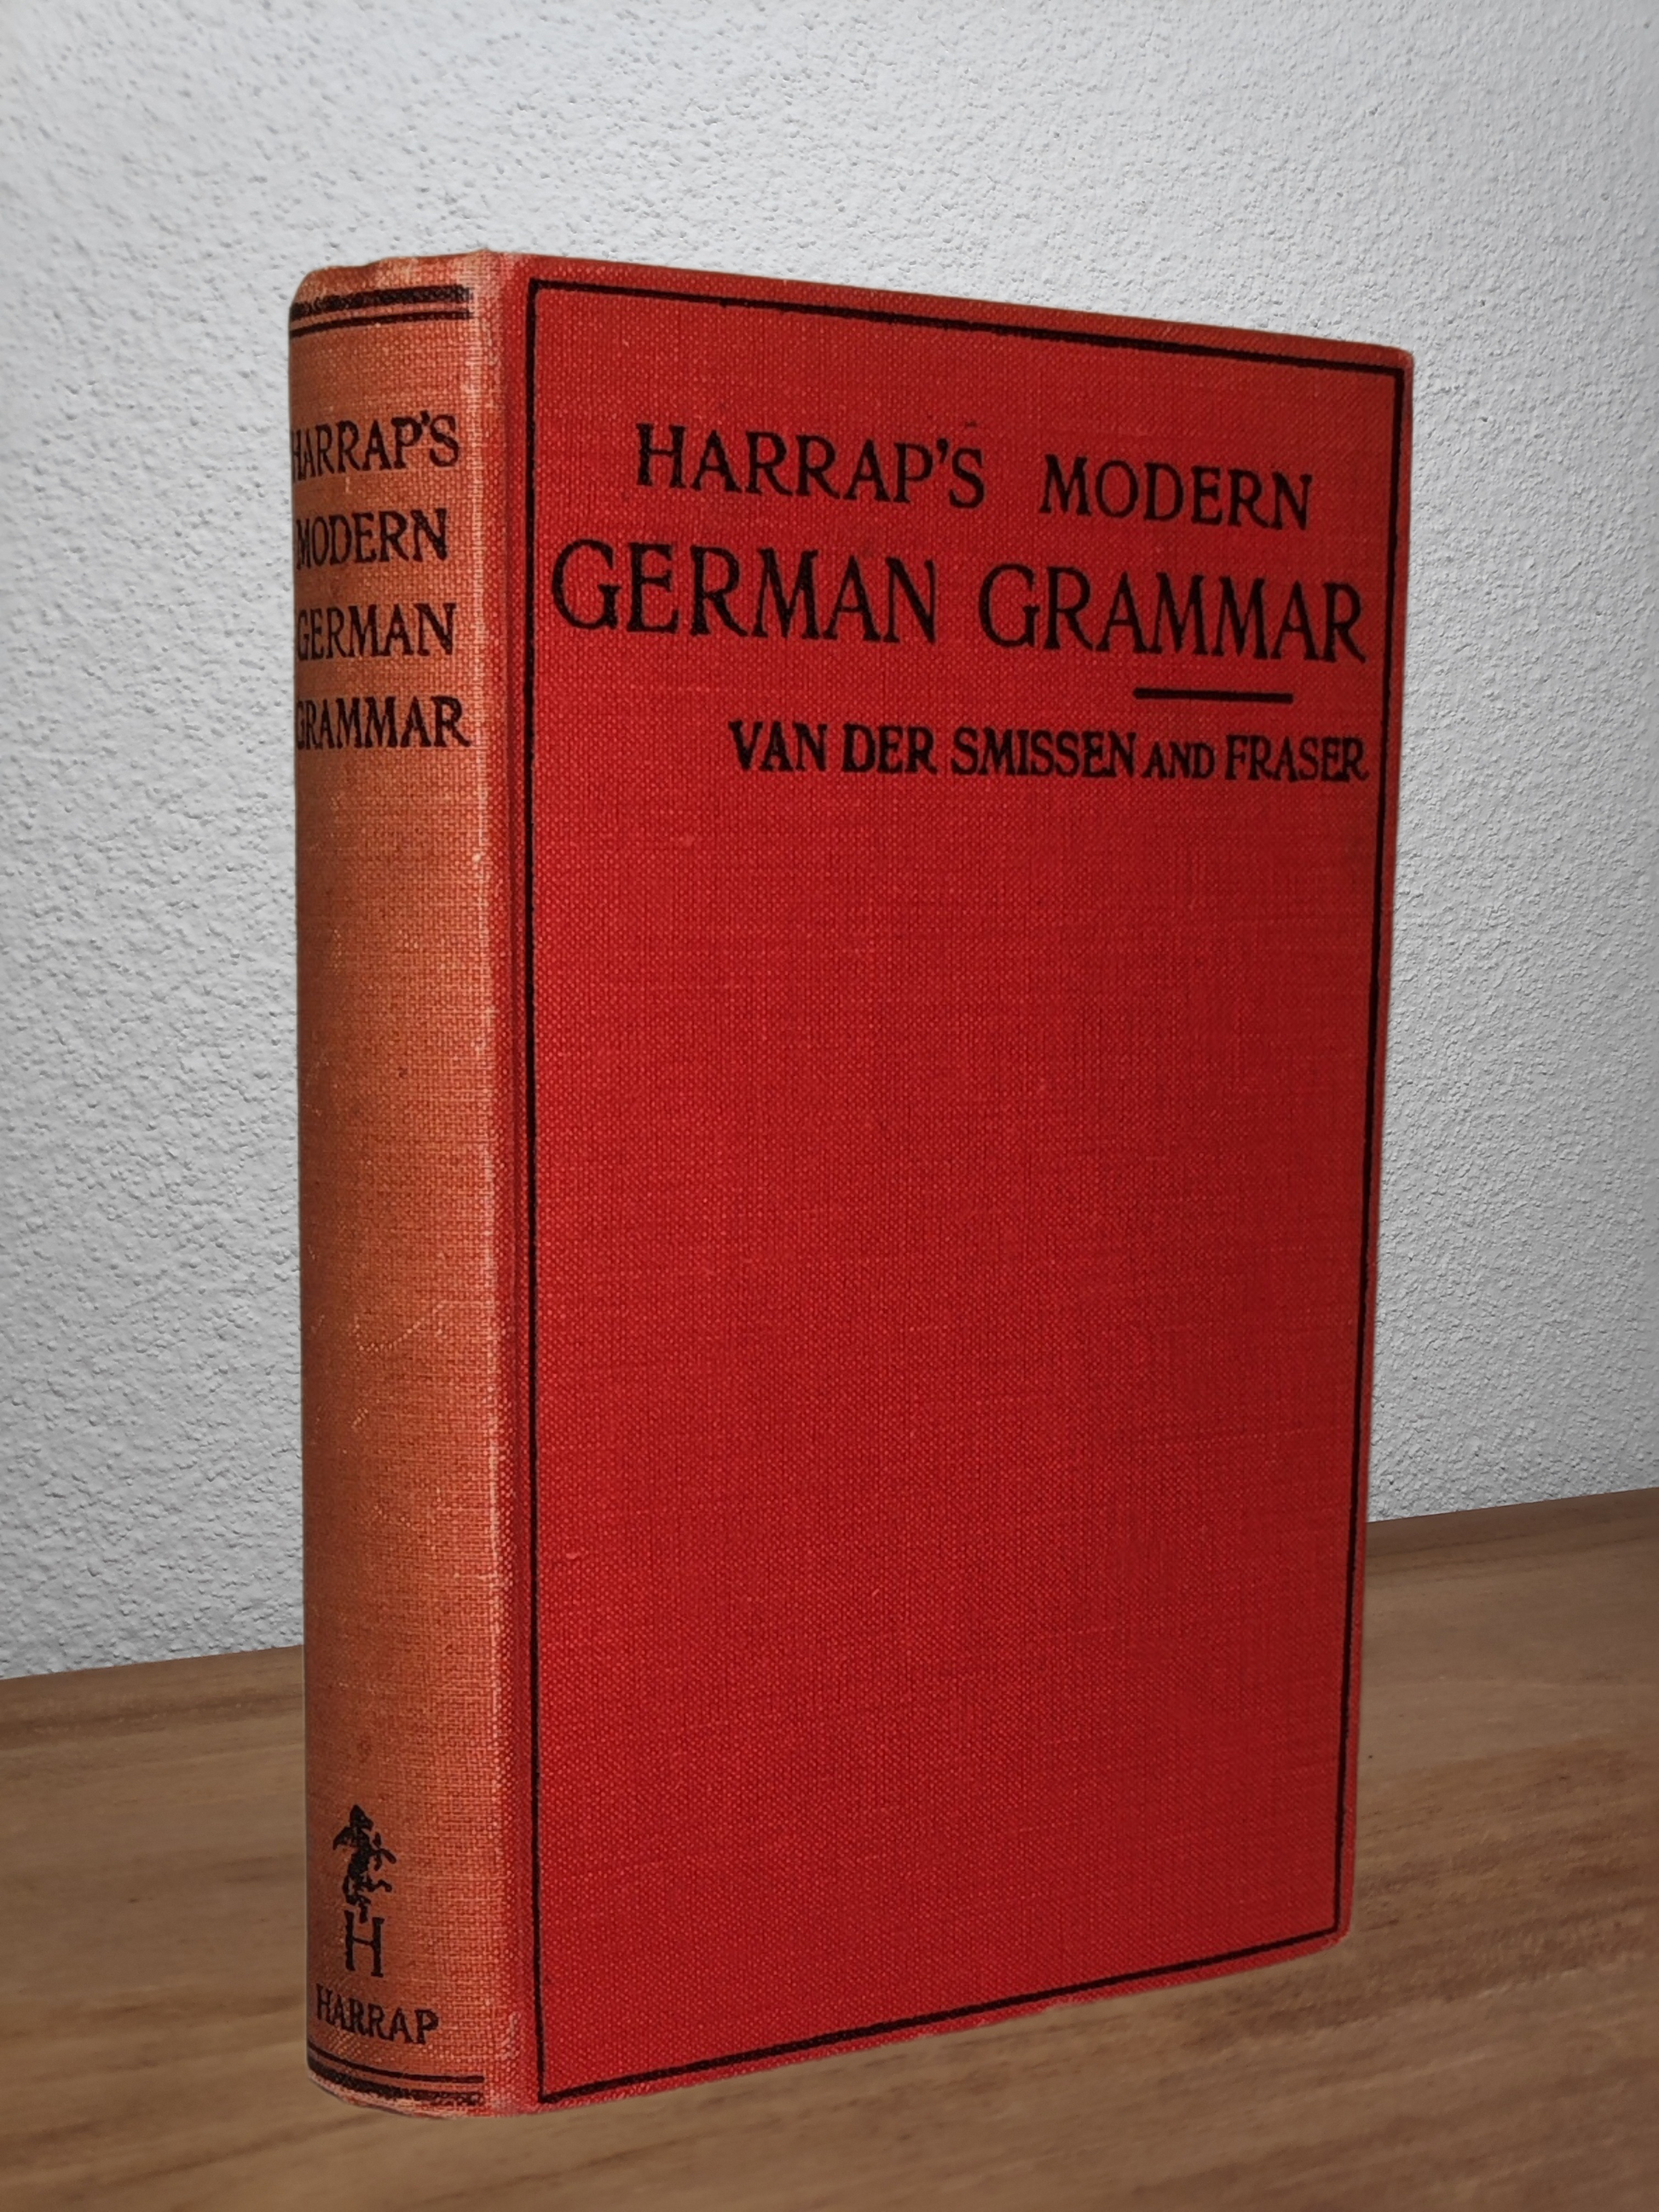 Van Der Smissen and Fraser - Harrap's Modern German Grammar  - Second-hand english book to deliver in Zurich & Switzerland